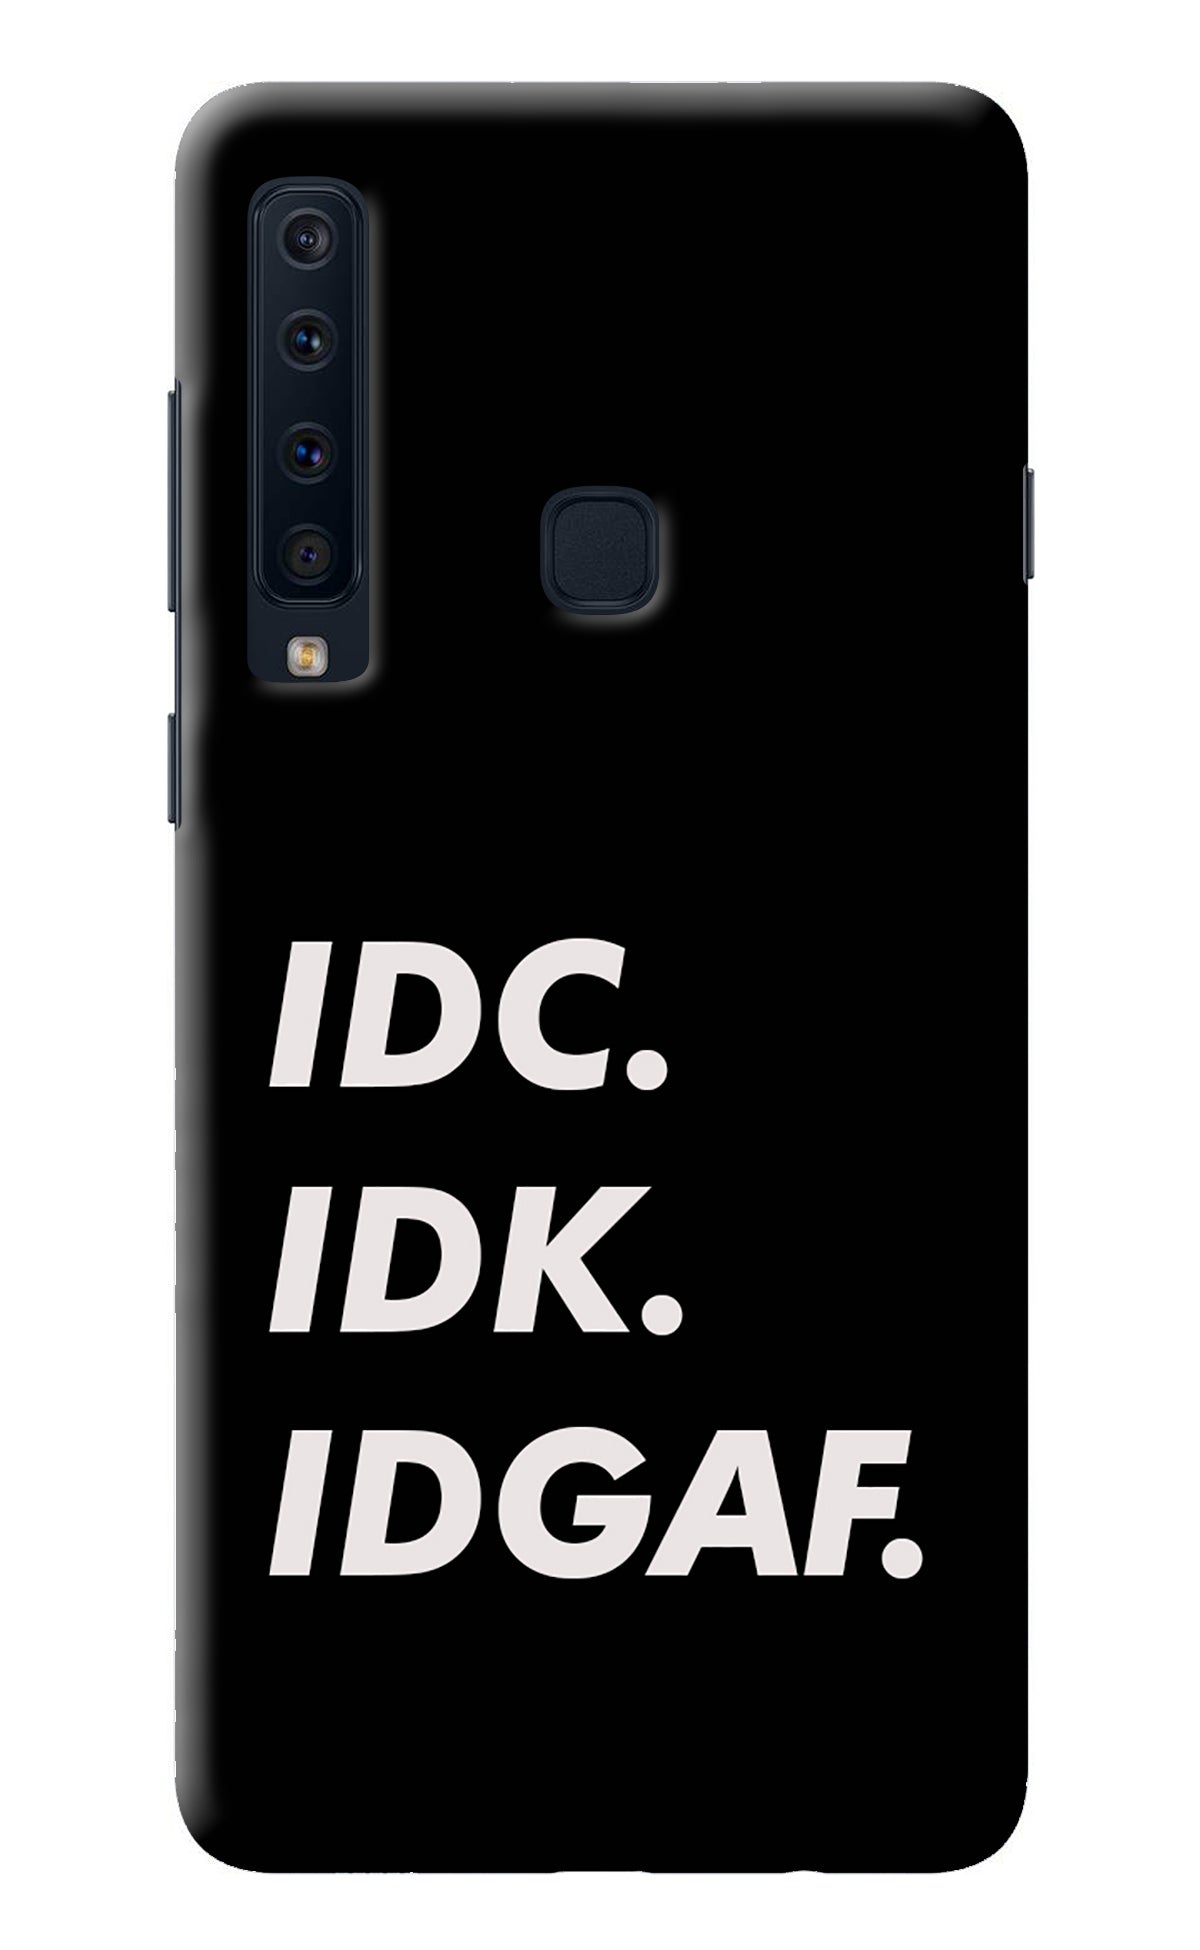 Idc Idk Idgaf Samsung A9 Back Cover